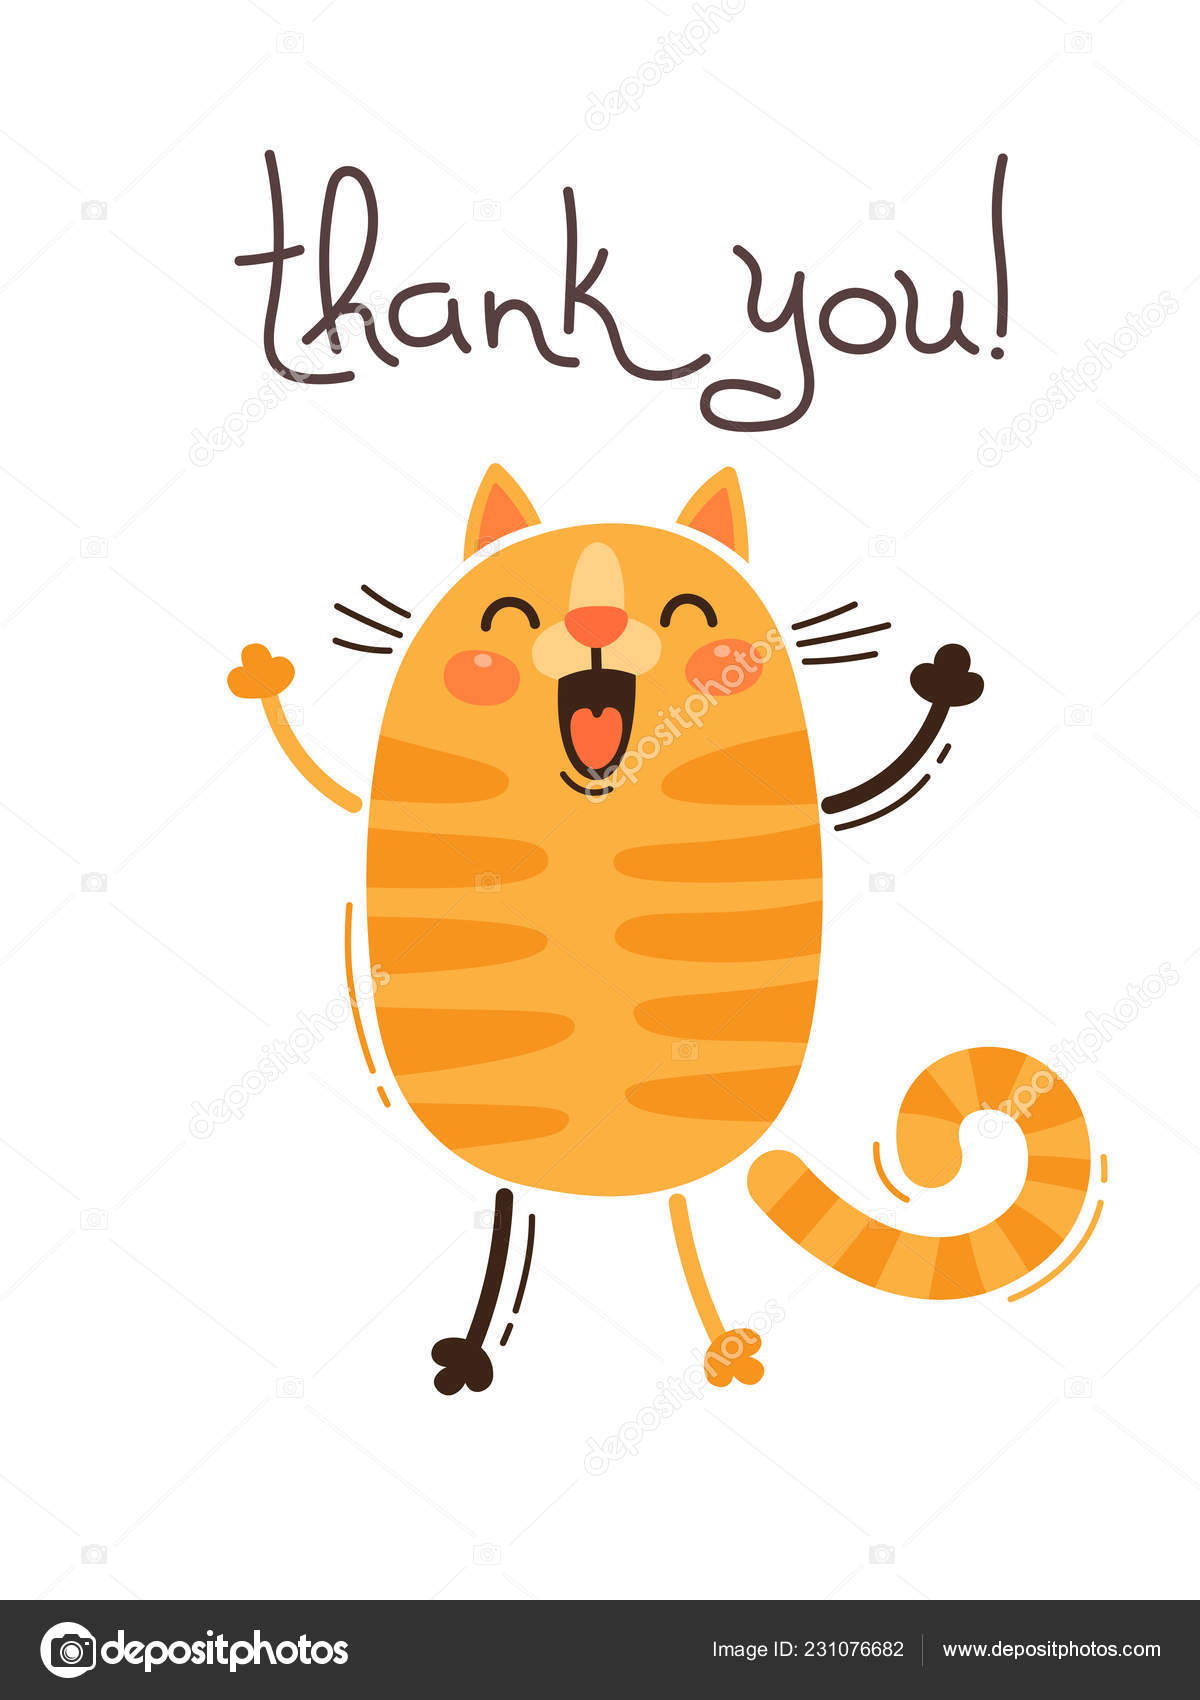 Lustige Katze sagt Danke. Vektorillustration im Cartoon-Stil